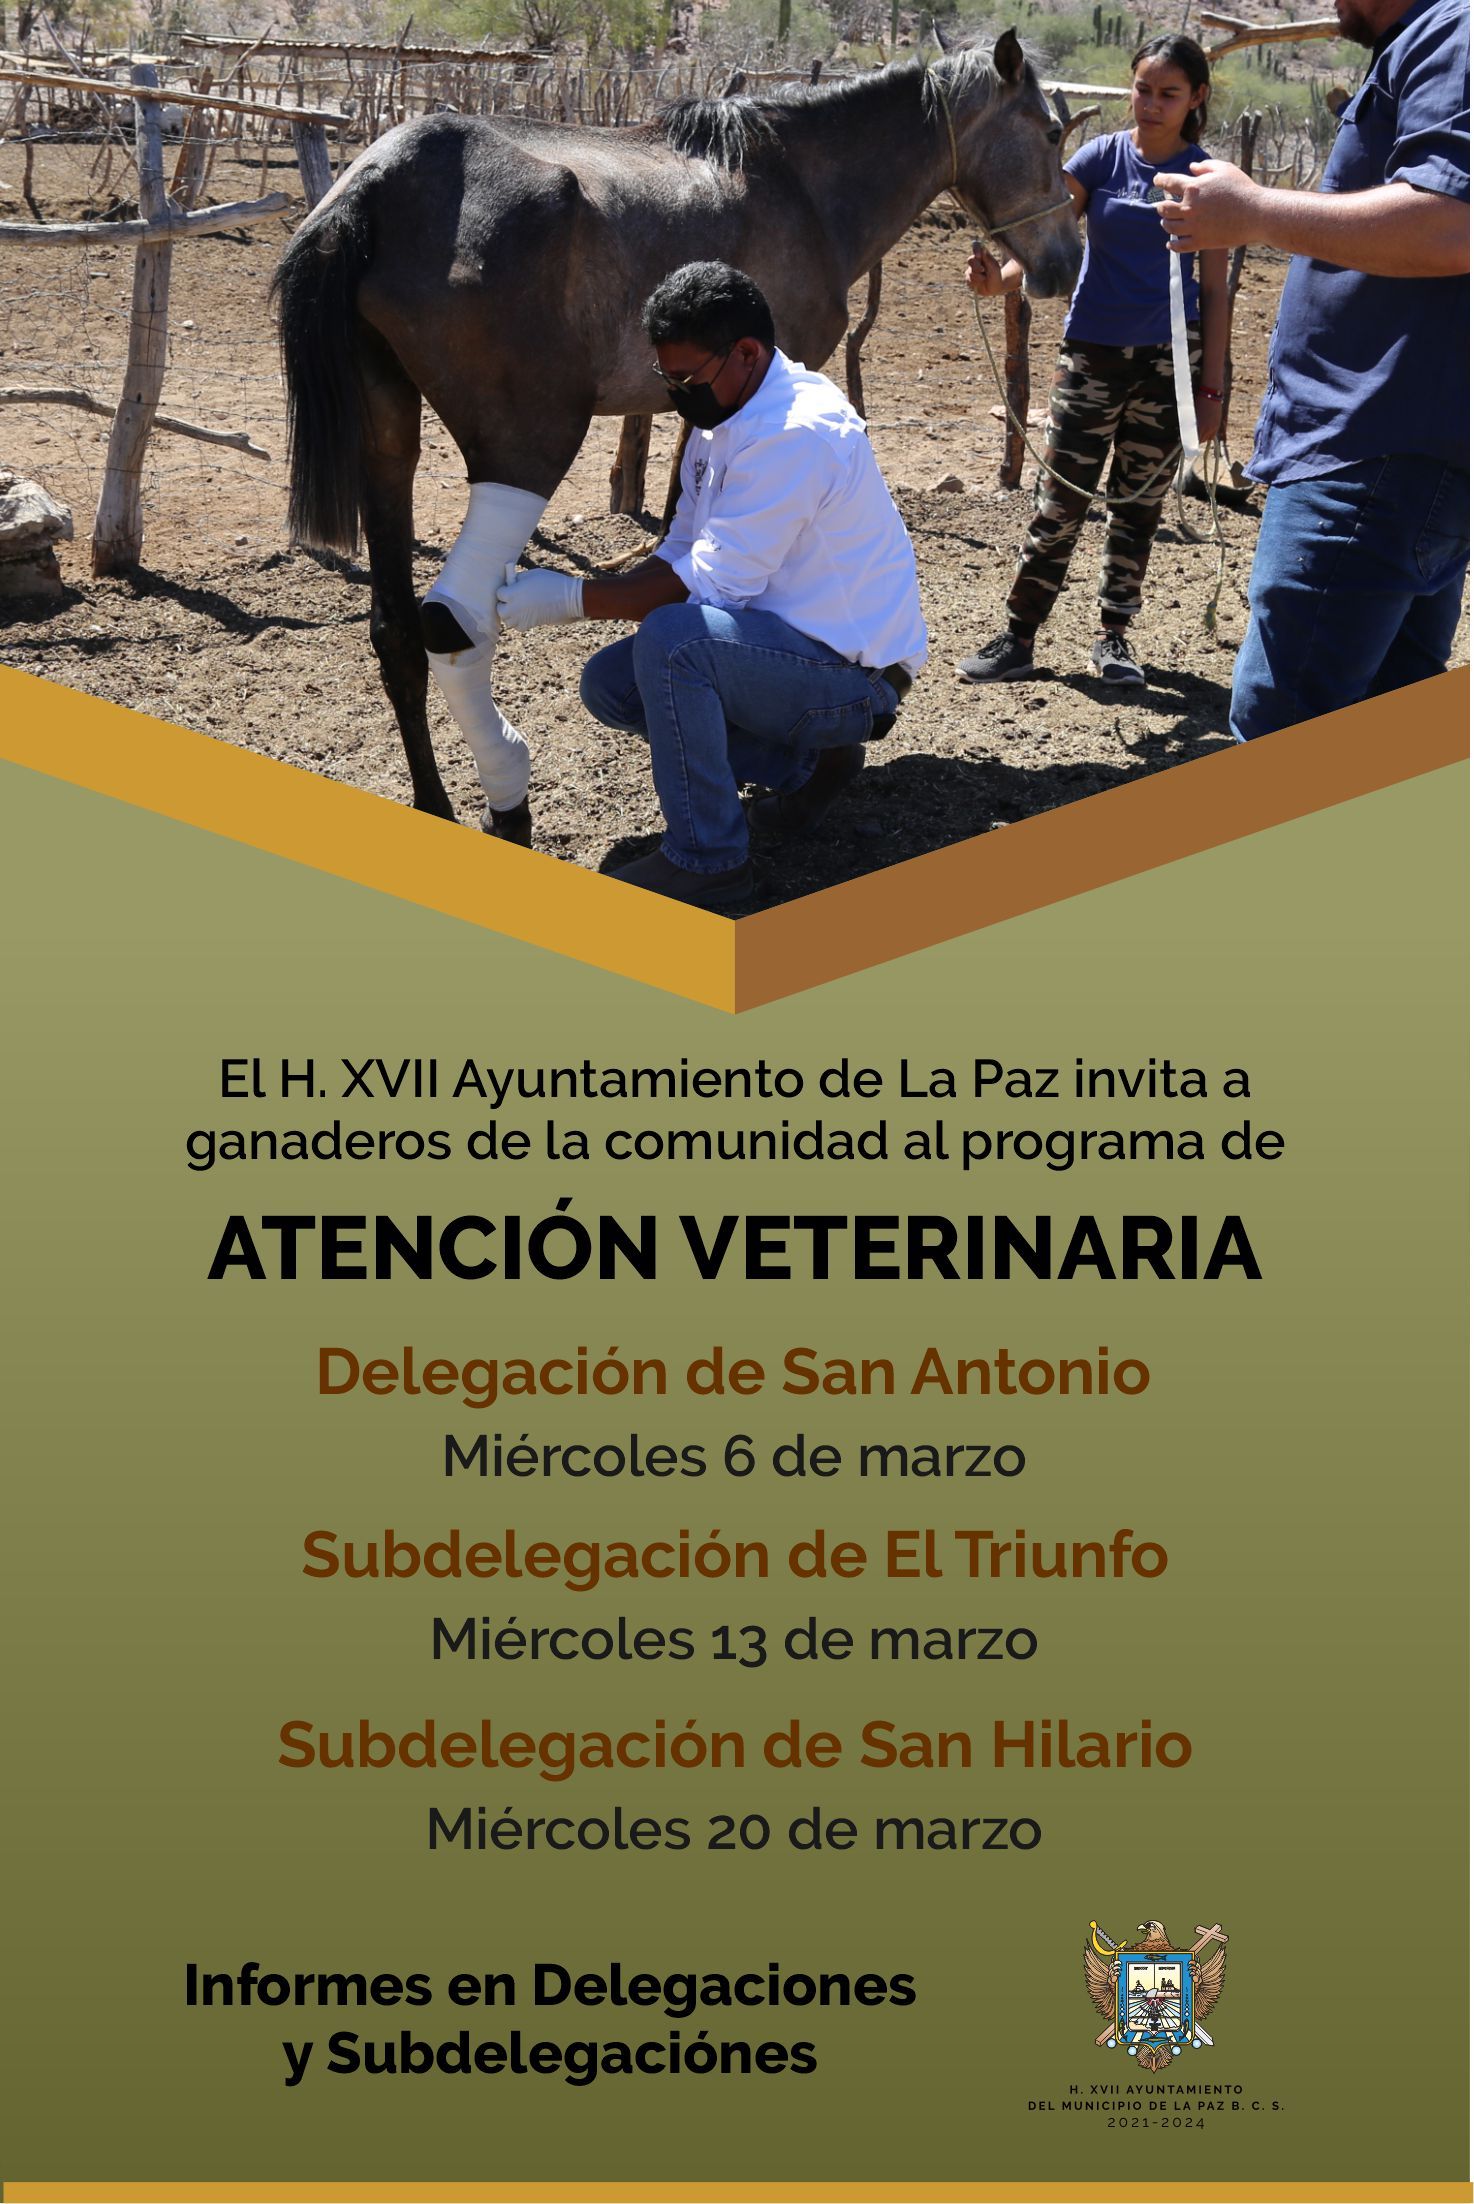 Invita Ayuntamiento de La Paz al Programa de Atención Veterinaria en zonas rurales